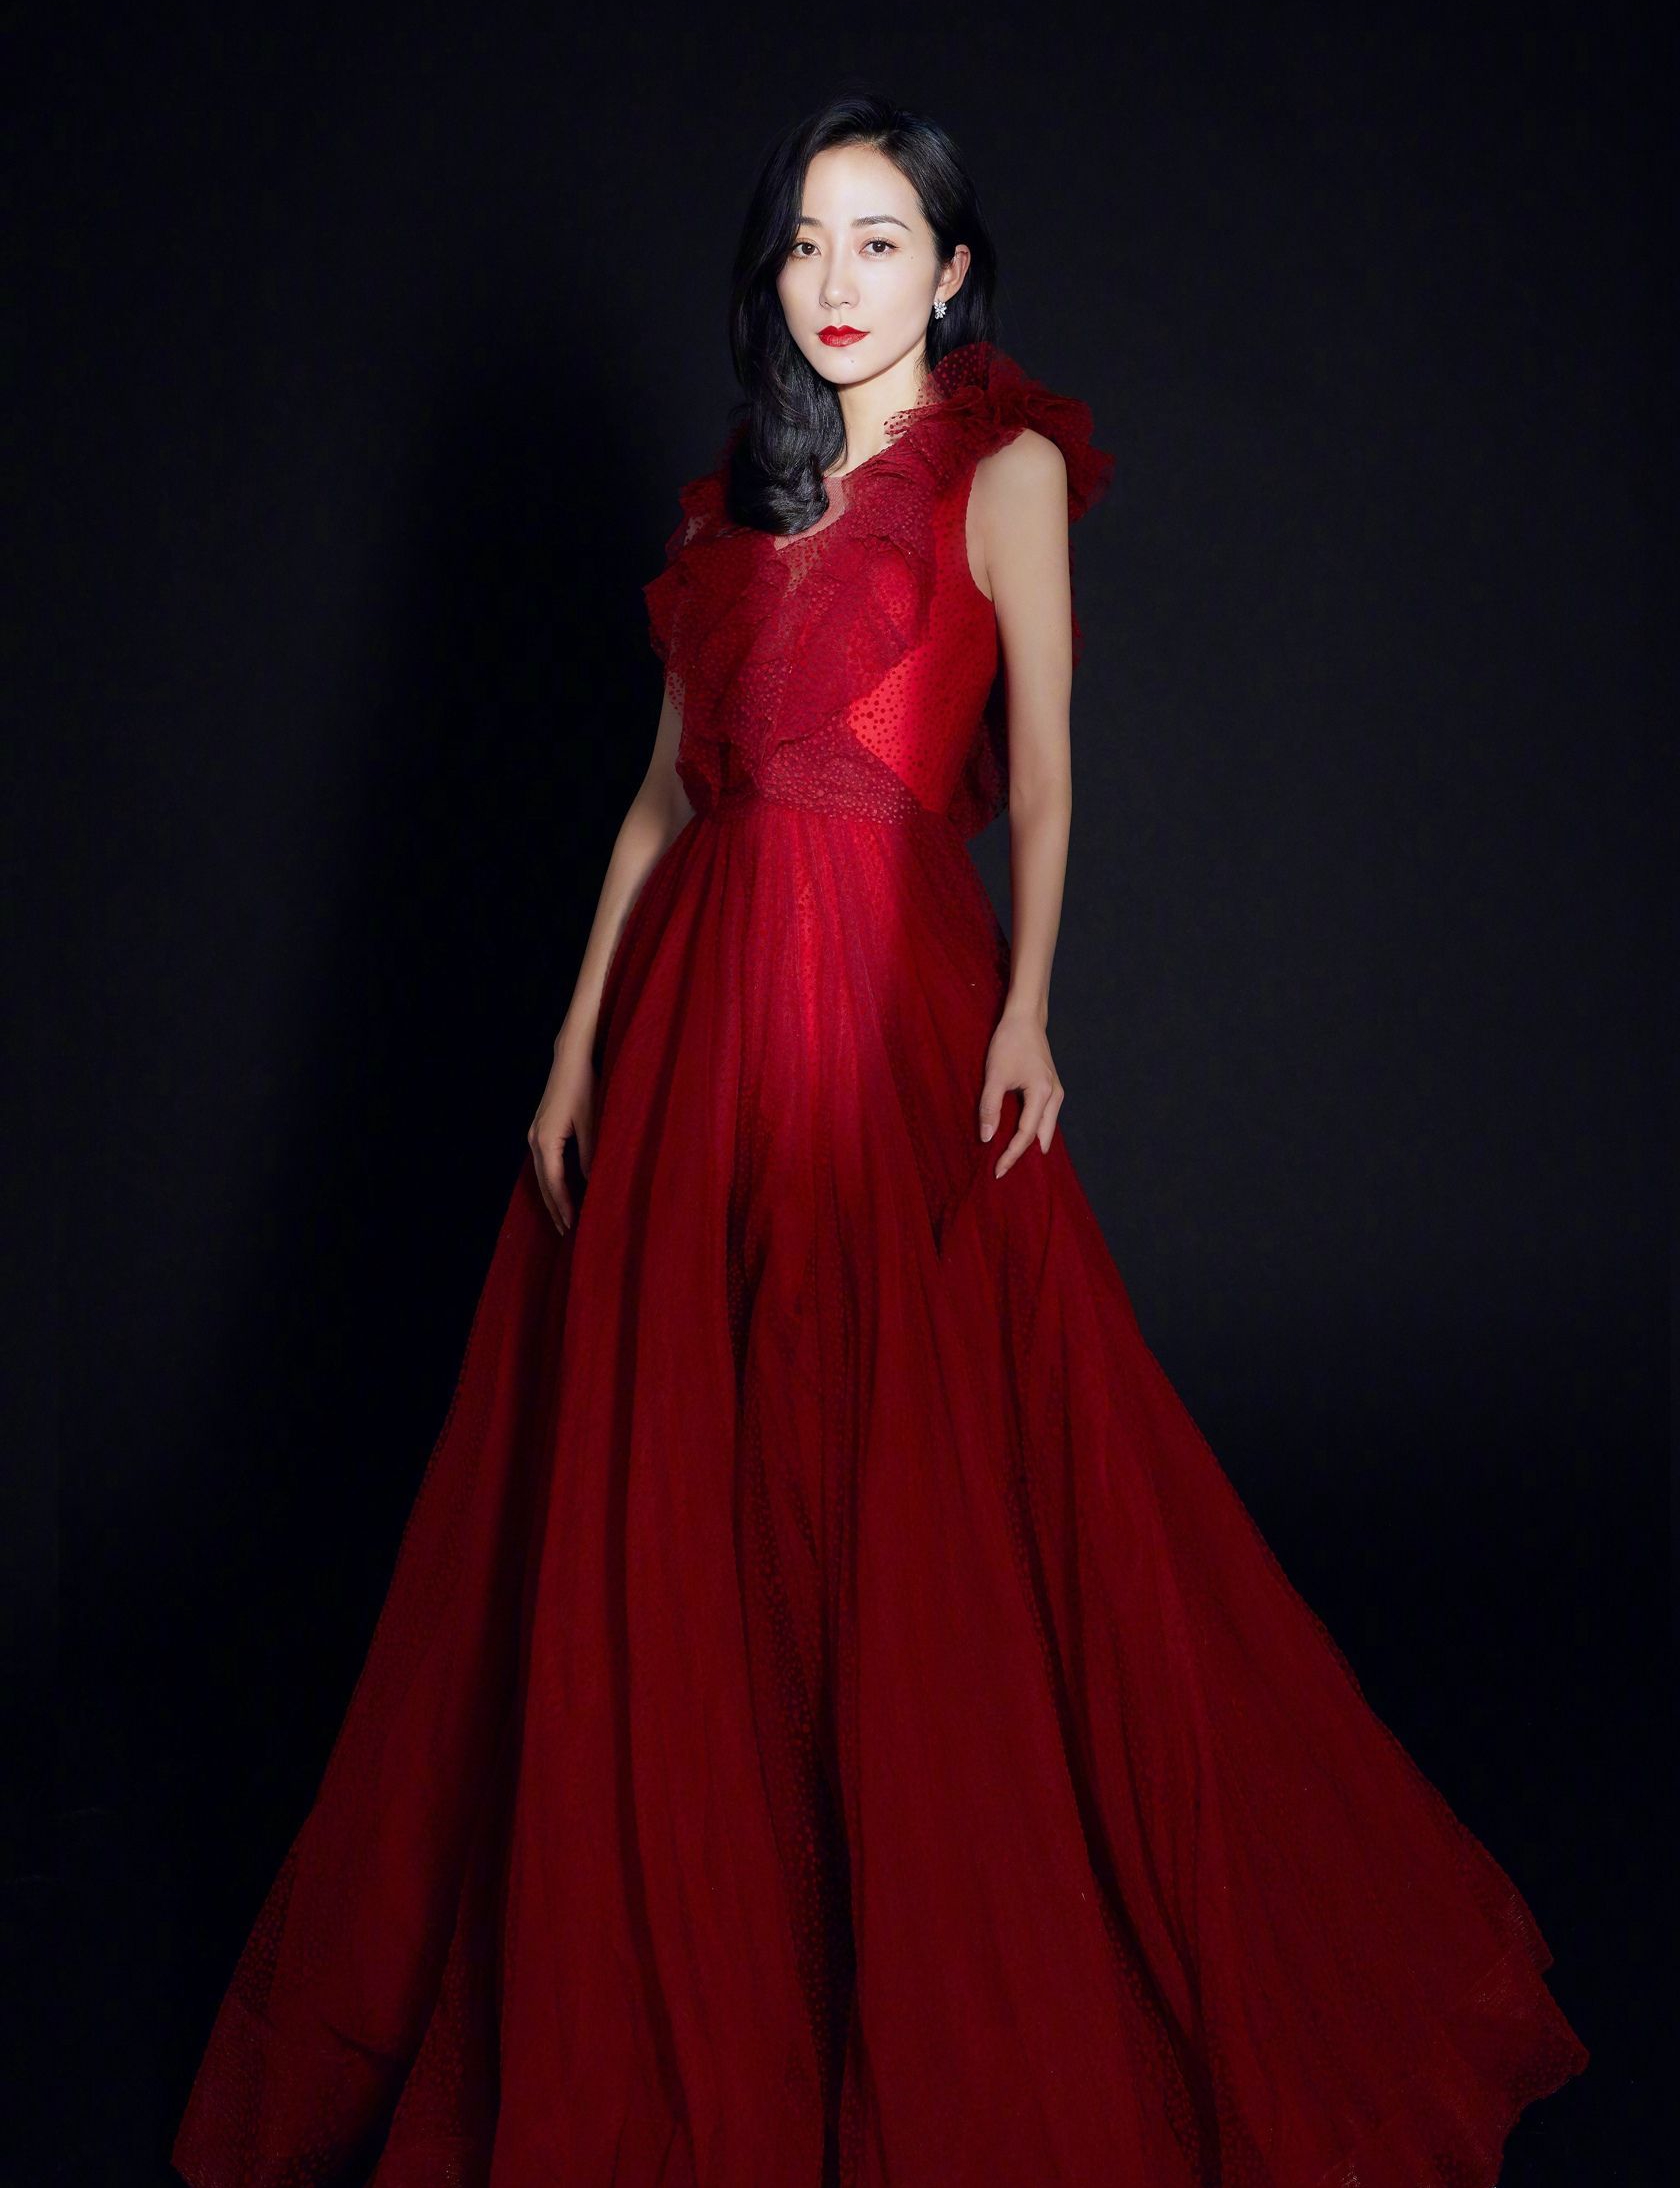 韩雪红色连衣裙礼服时尚写真灵动优雅娇俏可人